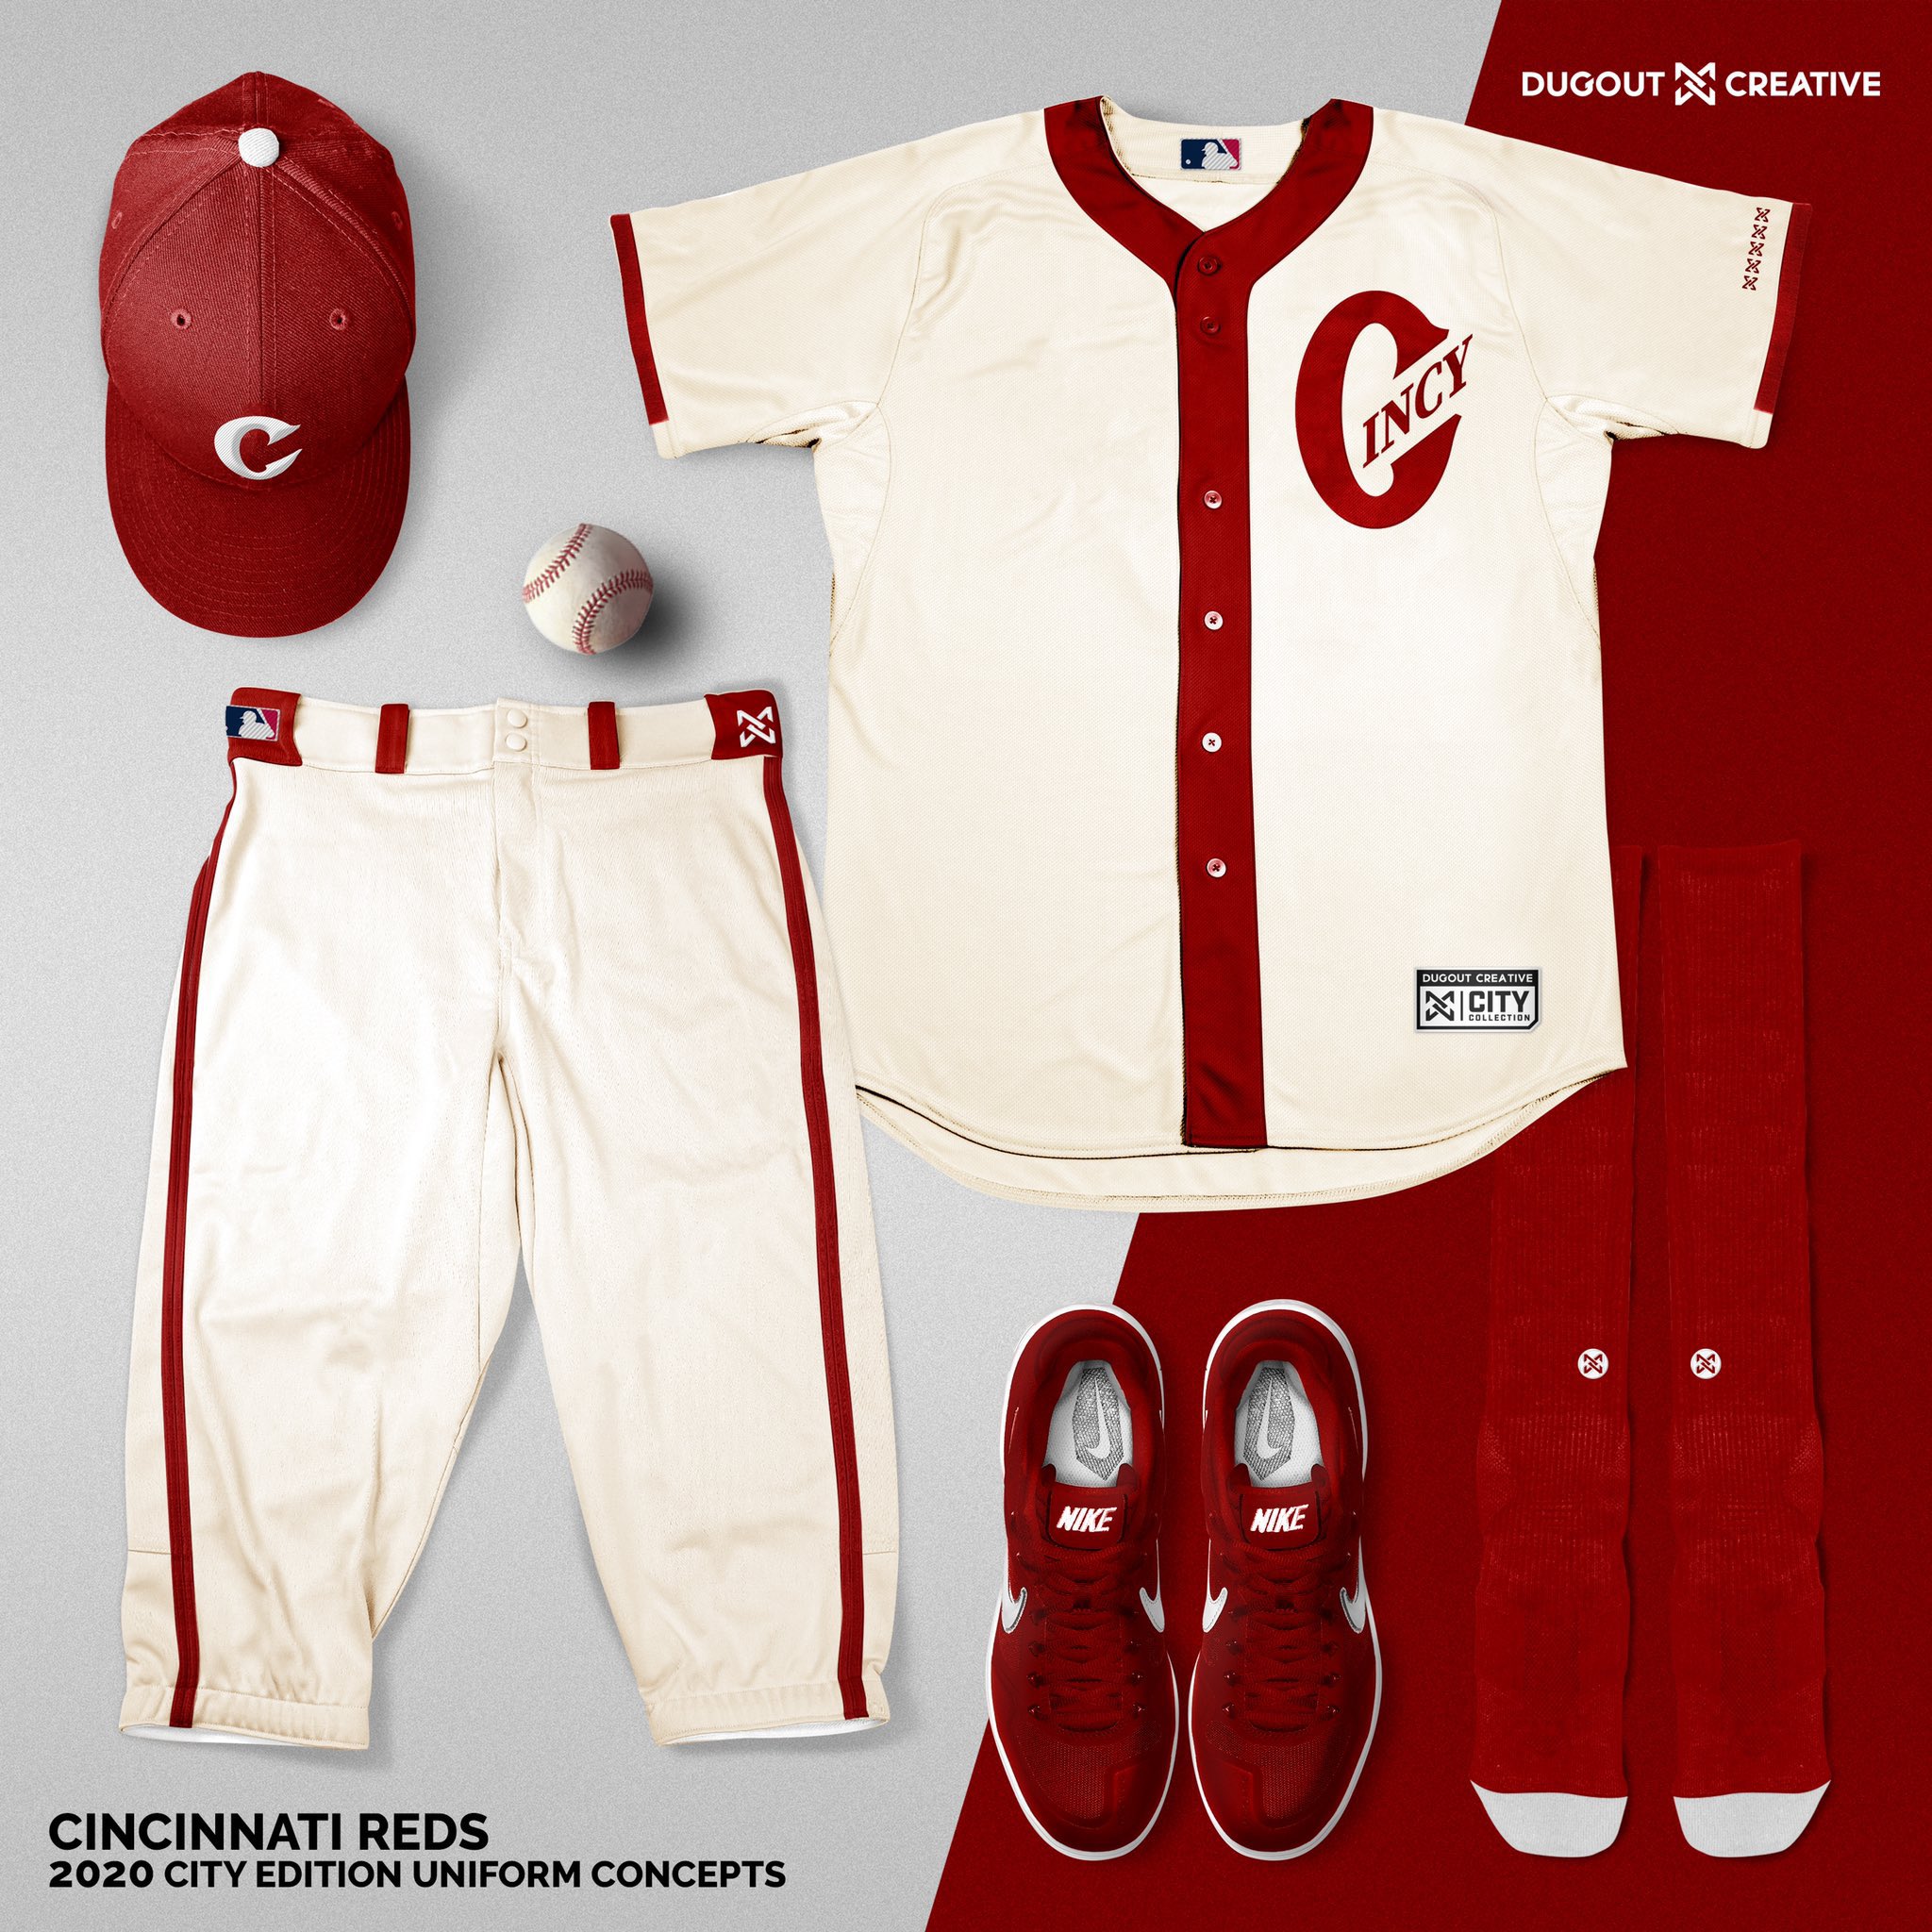 Miguel Lozada on X: MLB City Concepts Uniforms by @DugoutCreative